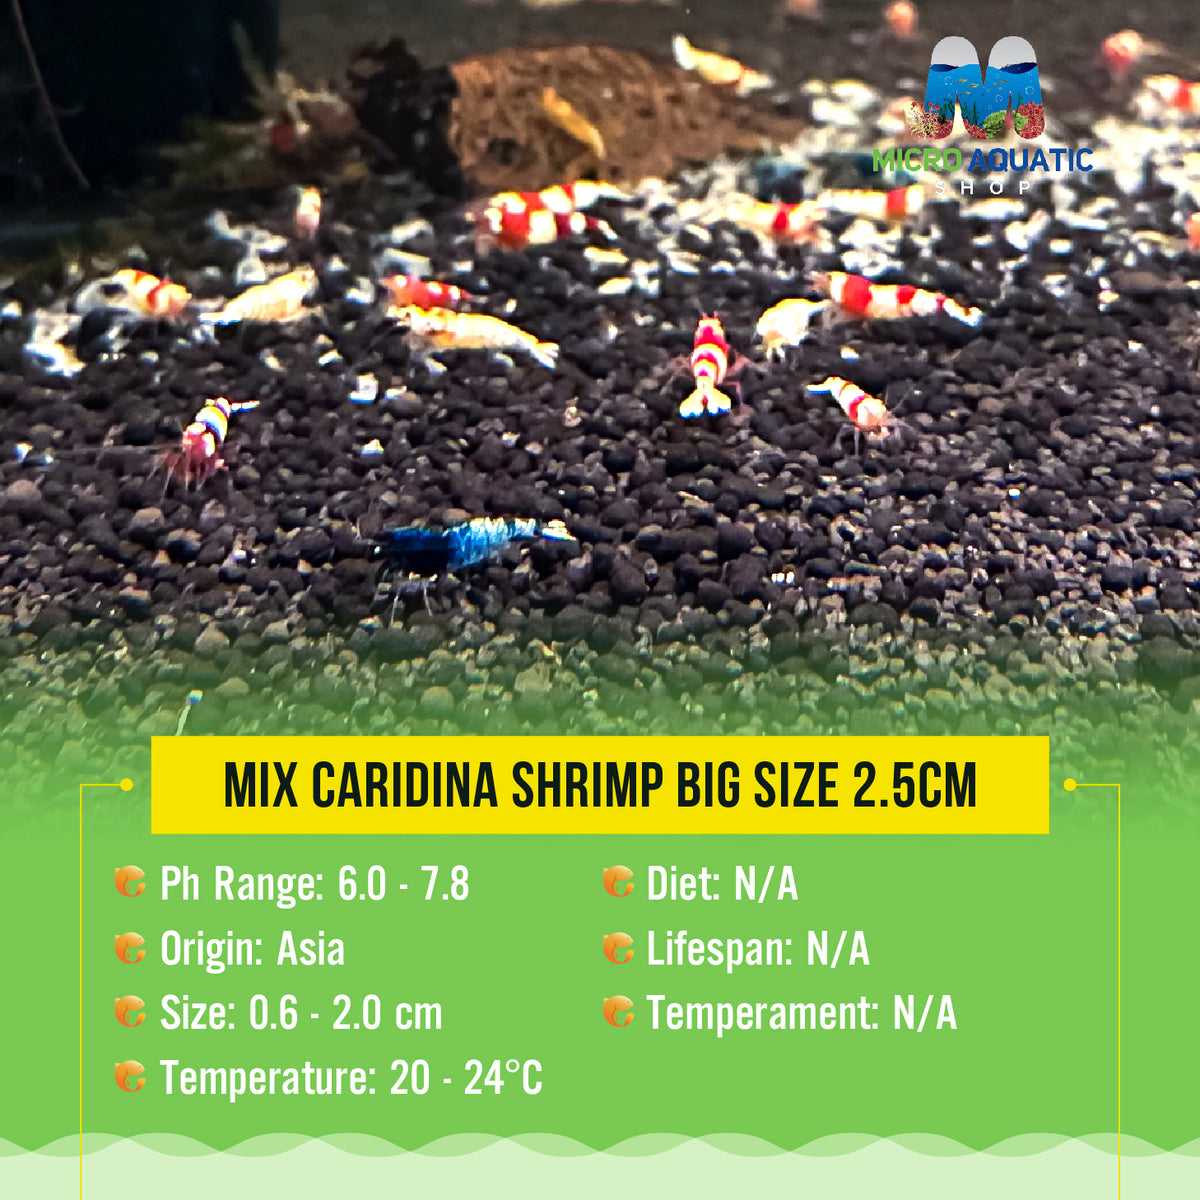 Mix Caridina Shrimp Big Size 2.5cm